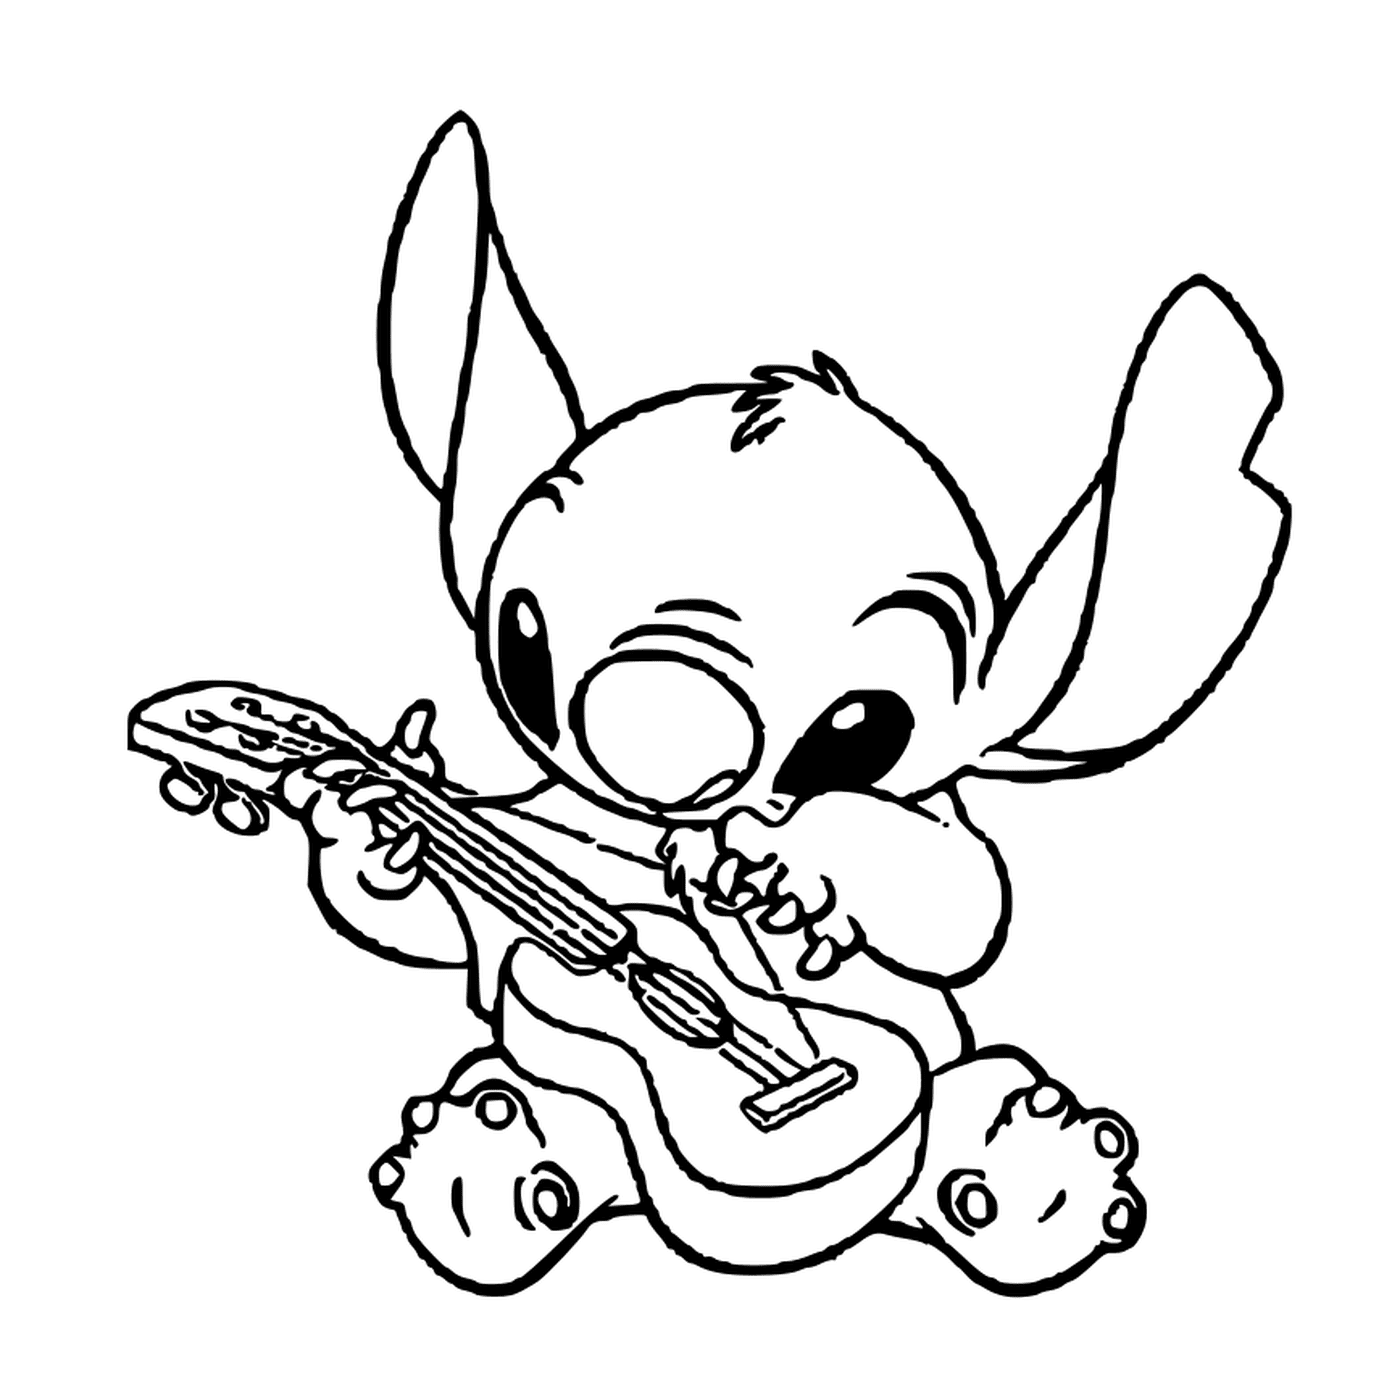  Stitch toca la guitarra 